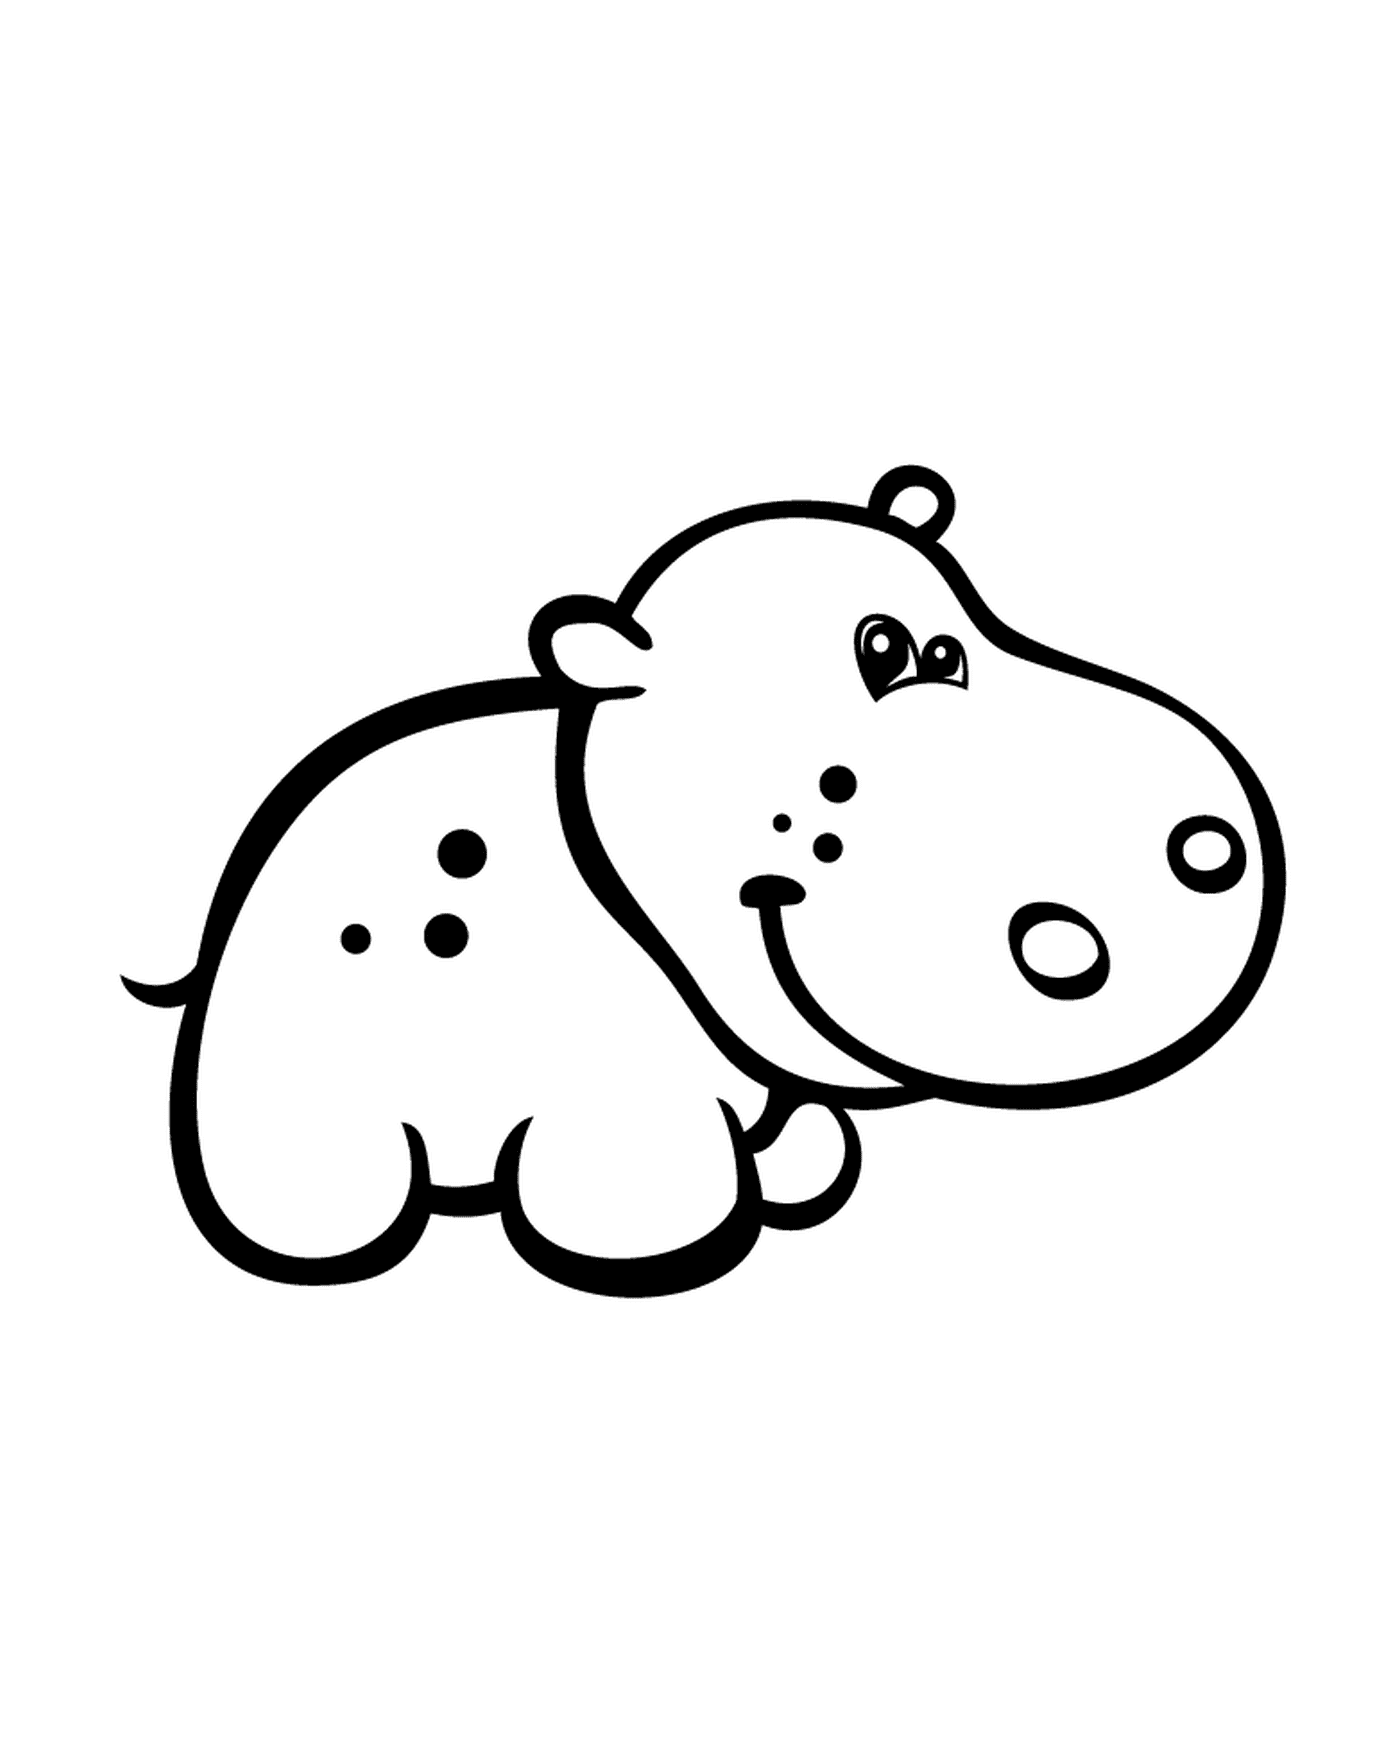   Une autre représentation d'un hippopotame 